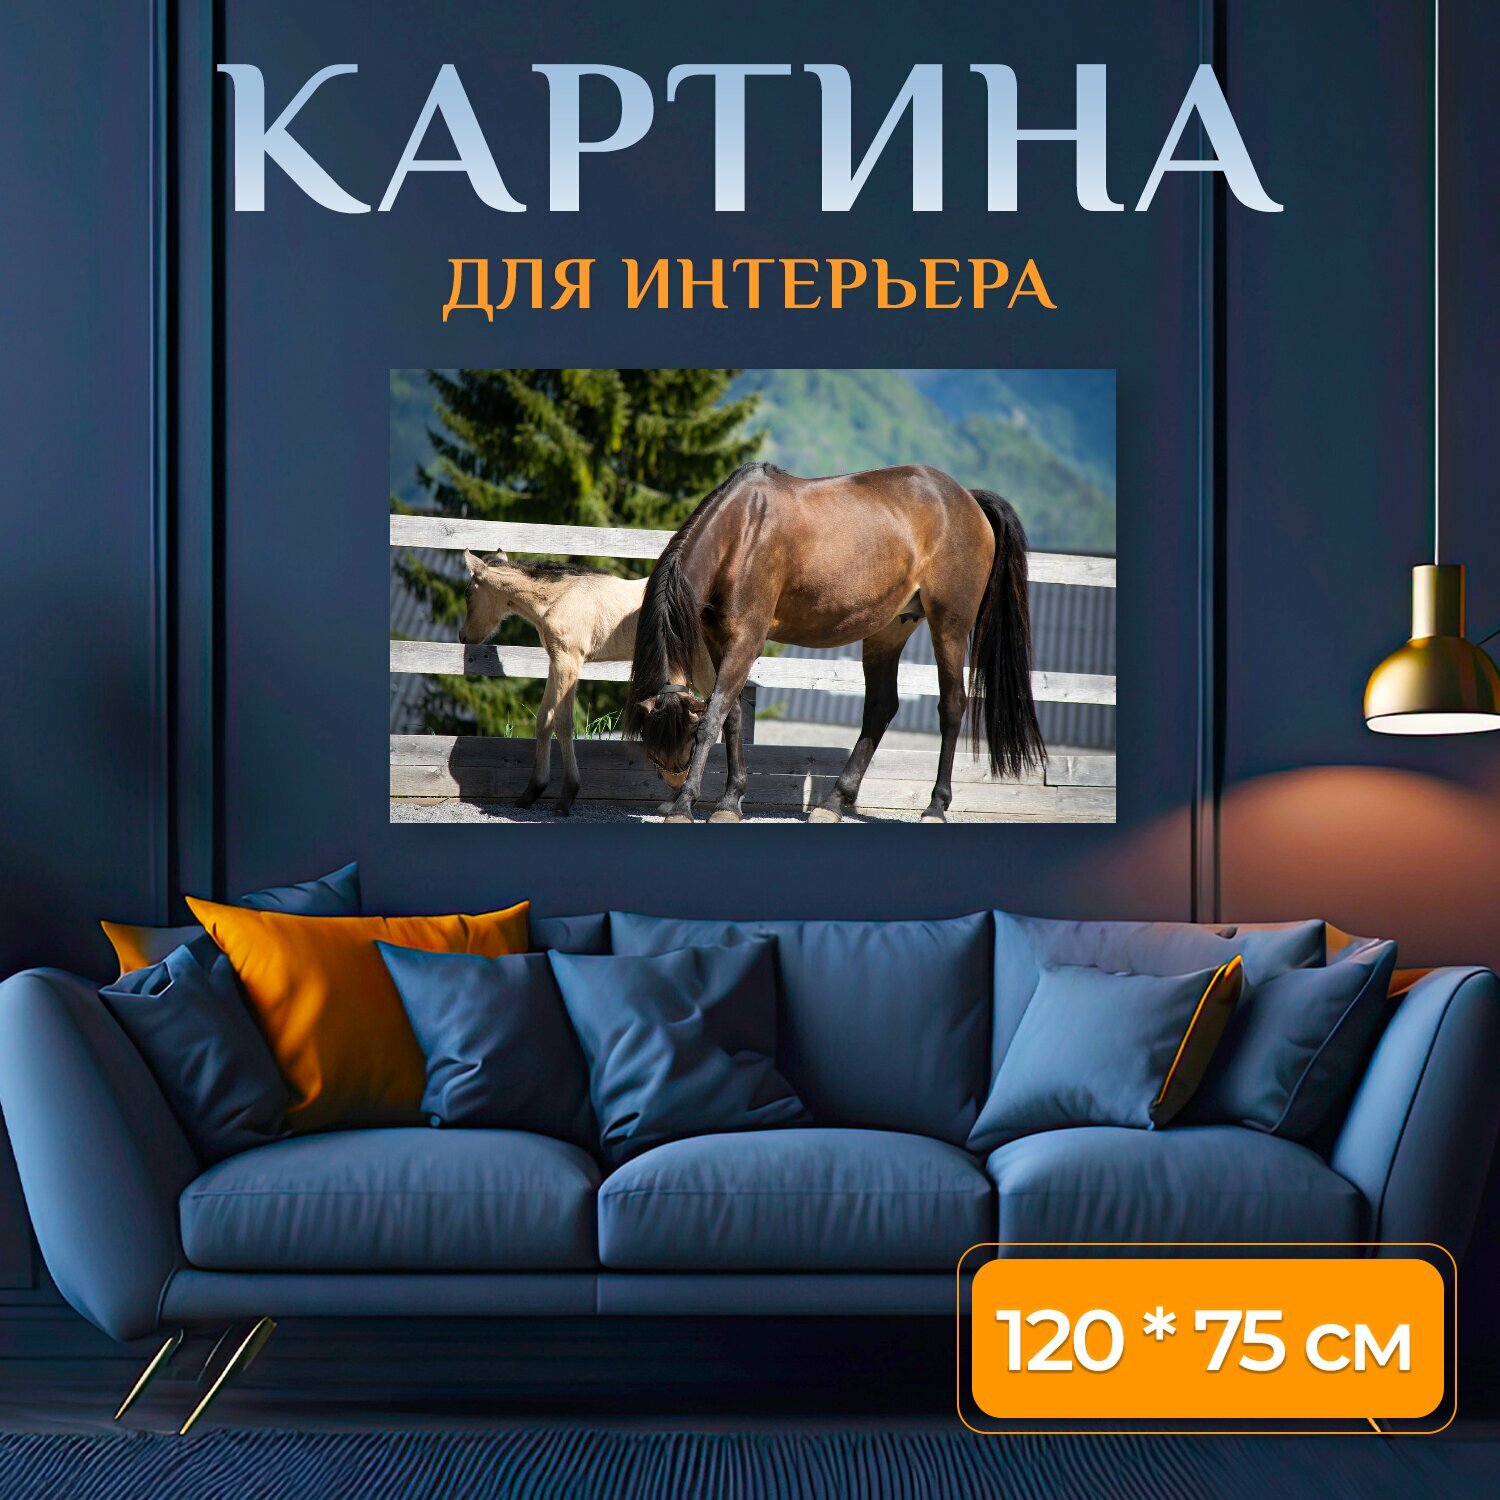 Картина на холсте "Лошади, пони, связь" на подрамнике 120х75 см. для интерьера